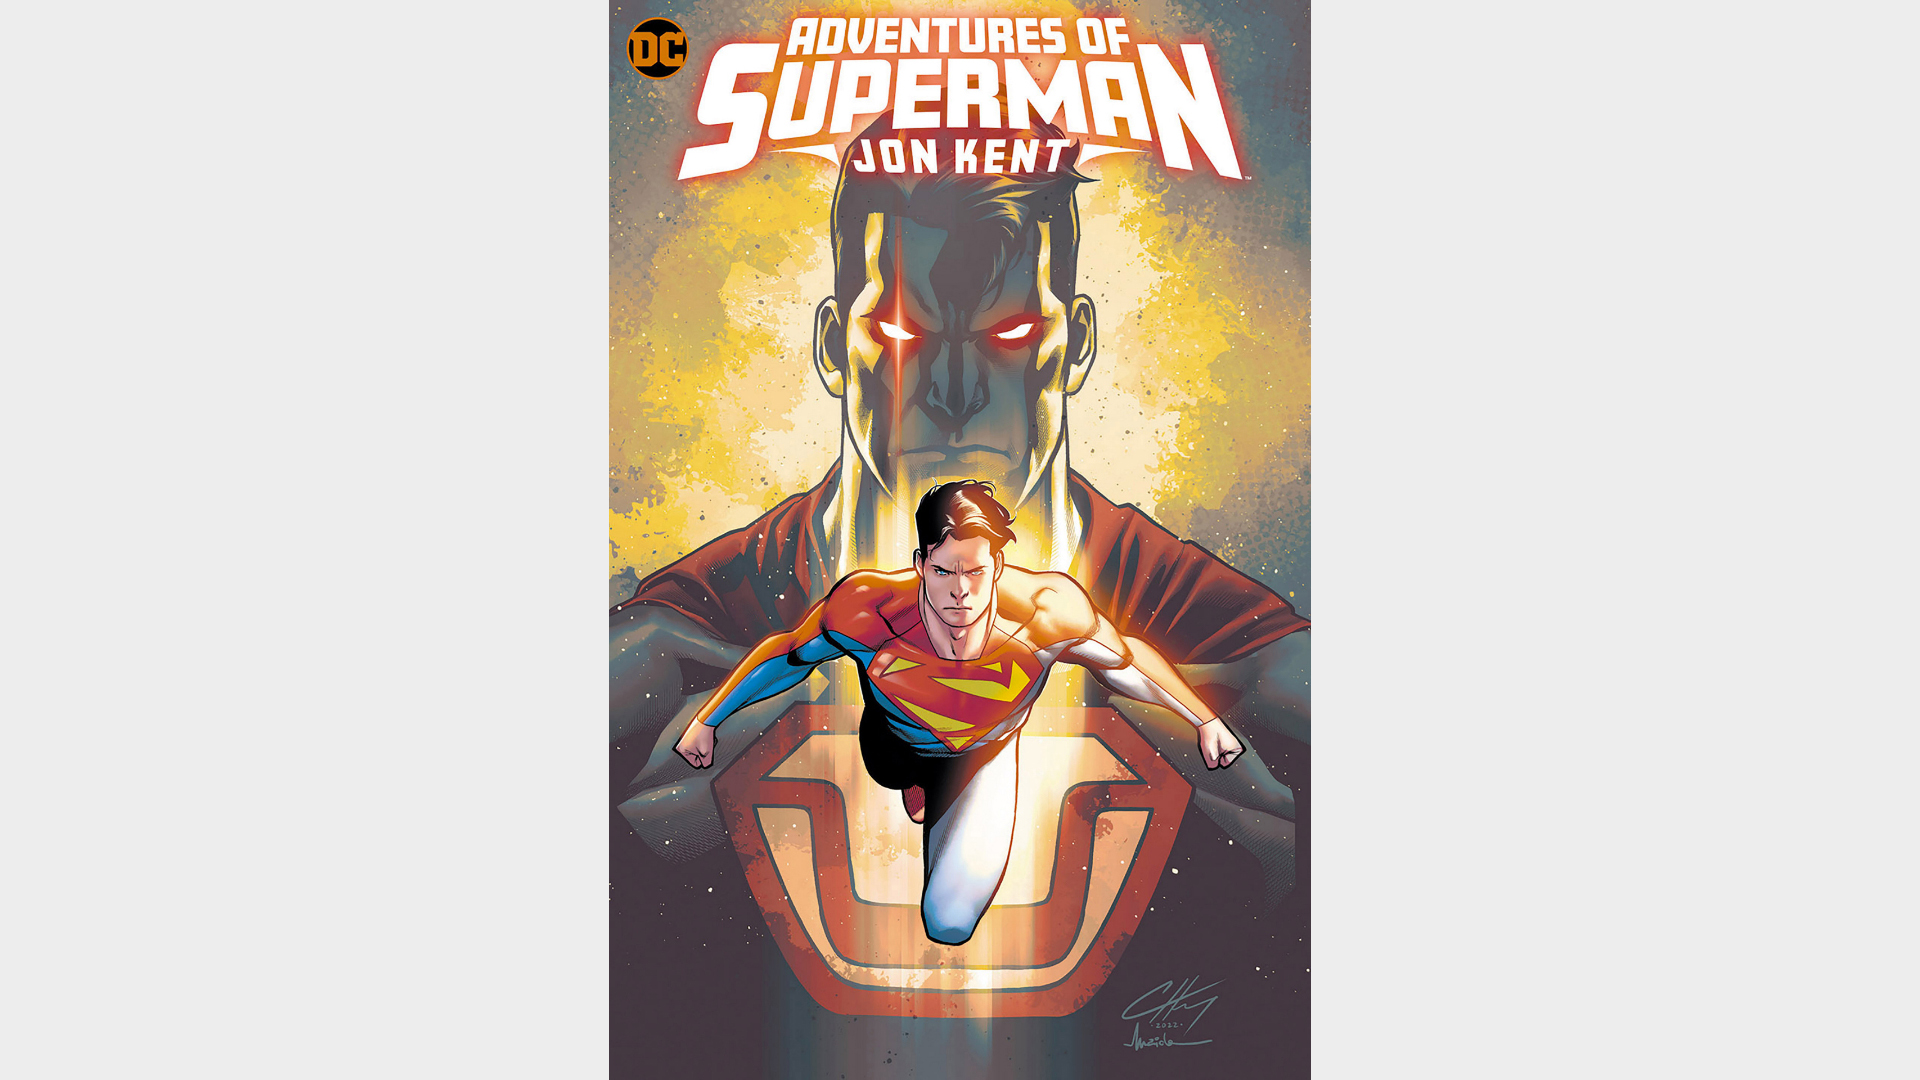 ABENTEUER VON SUPERMAN: JON KENT